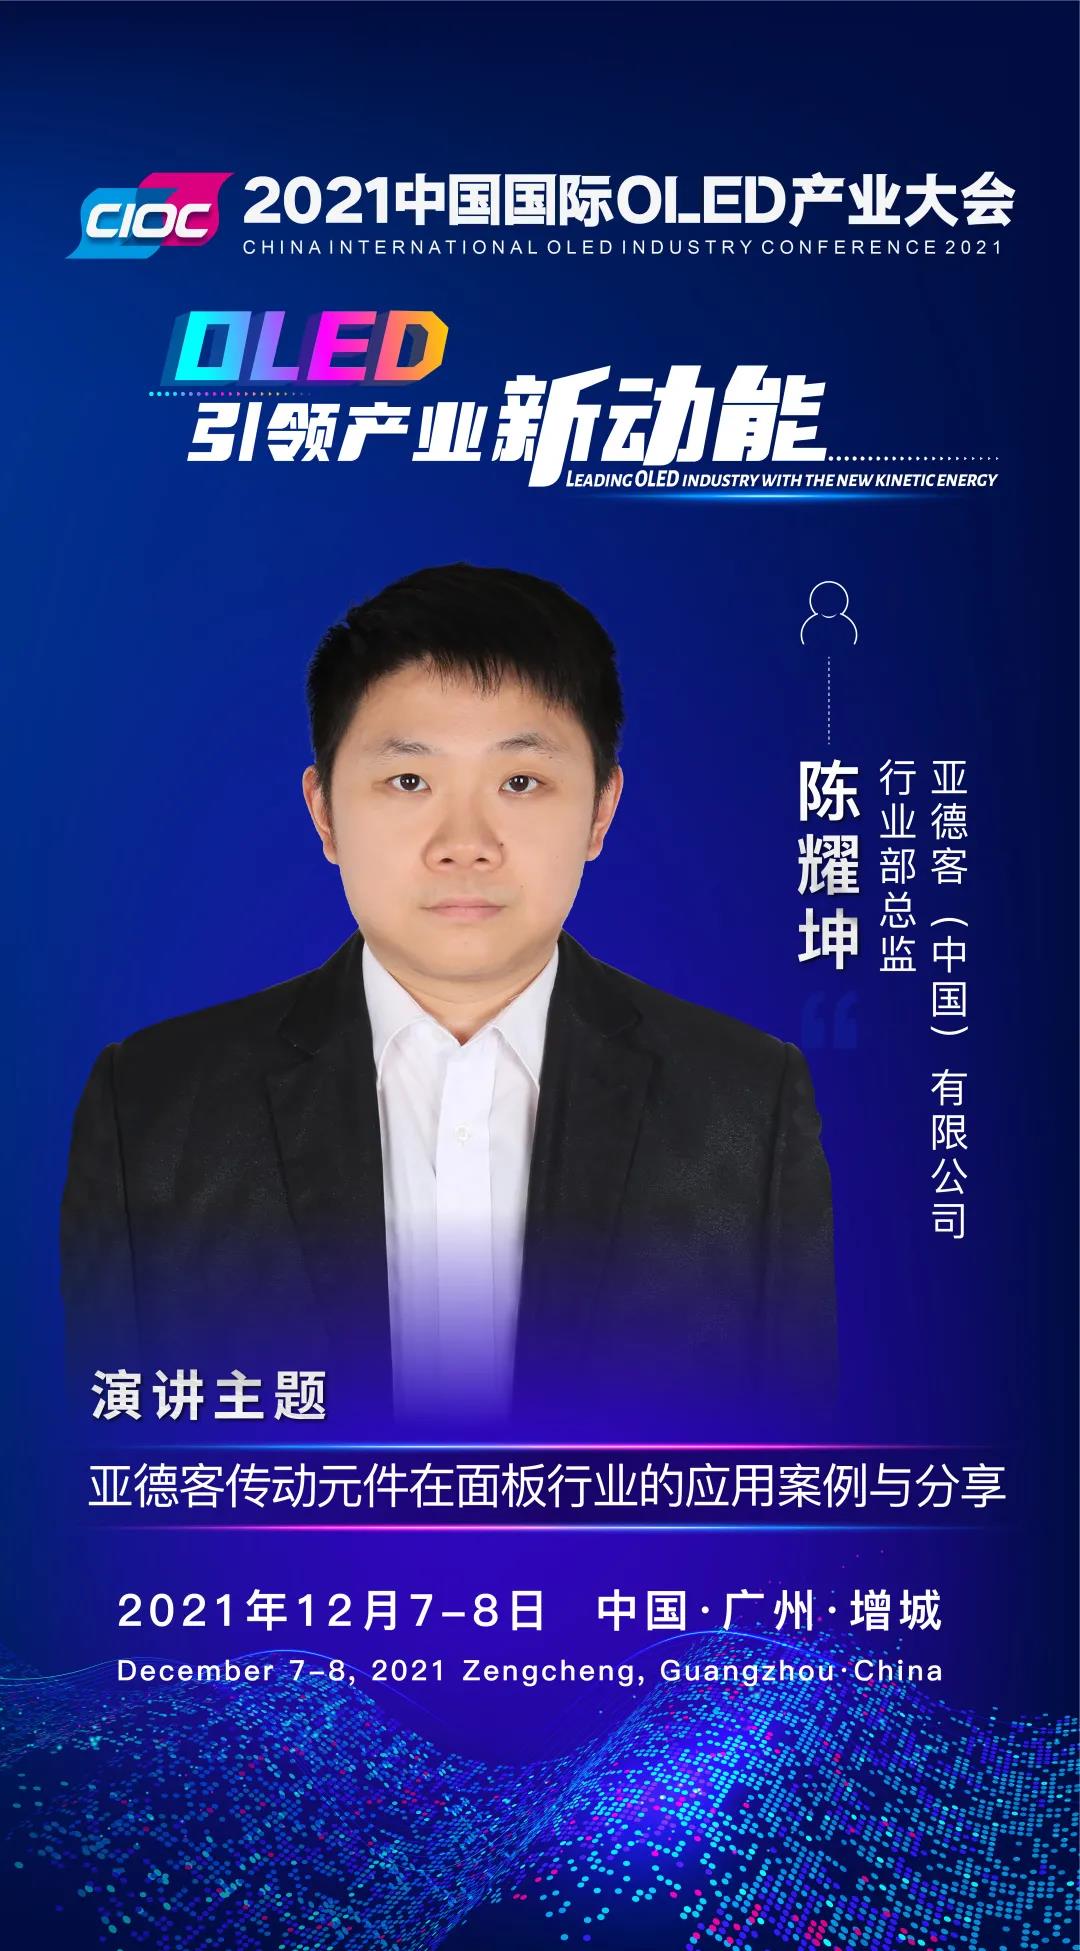 OLED大咖SHOW | 亚德客行业部总监陈耀坤受邀出席2021中国国际OLED产业大会并发表主题演讲